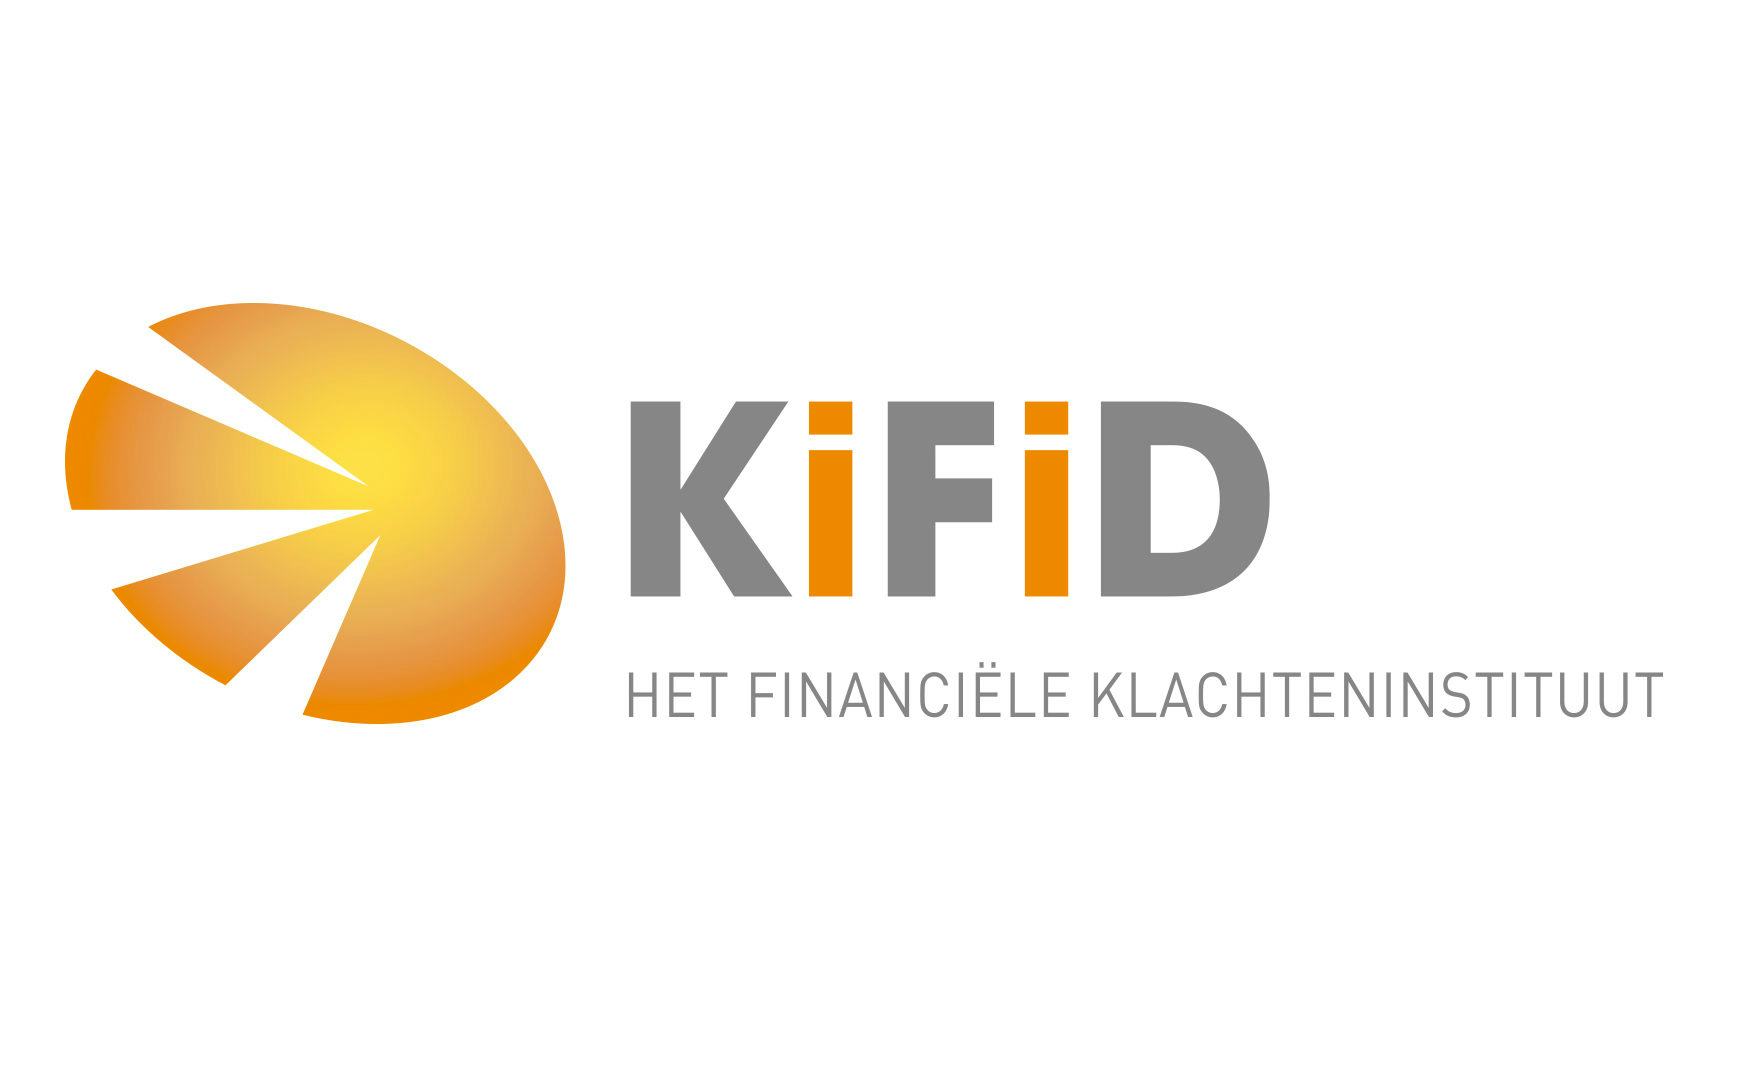 Kifid: Rabo vrijuit nadat het ton meer verstrekte dan maximum in hypotheekplan